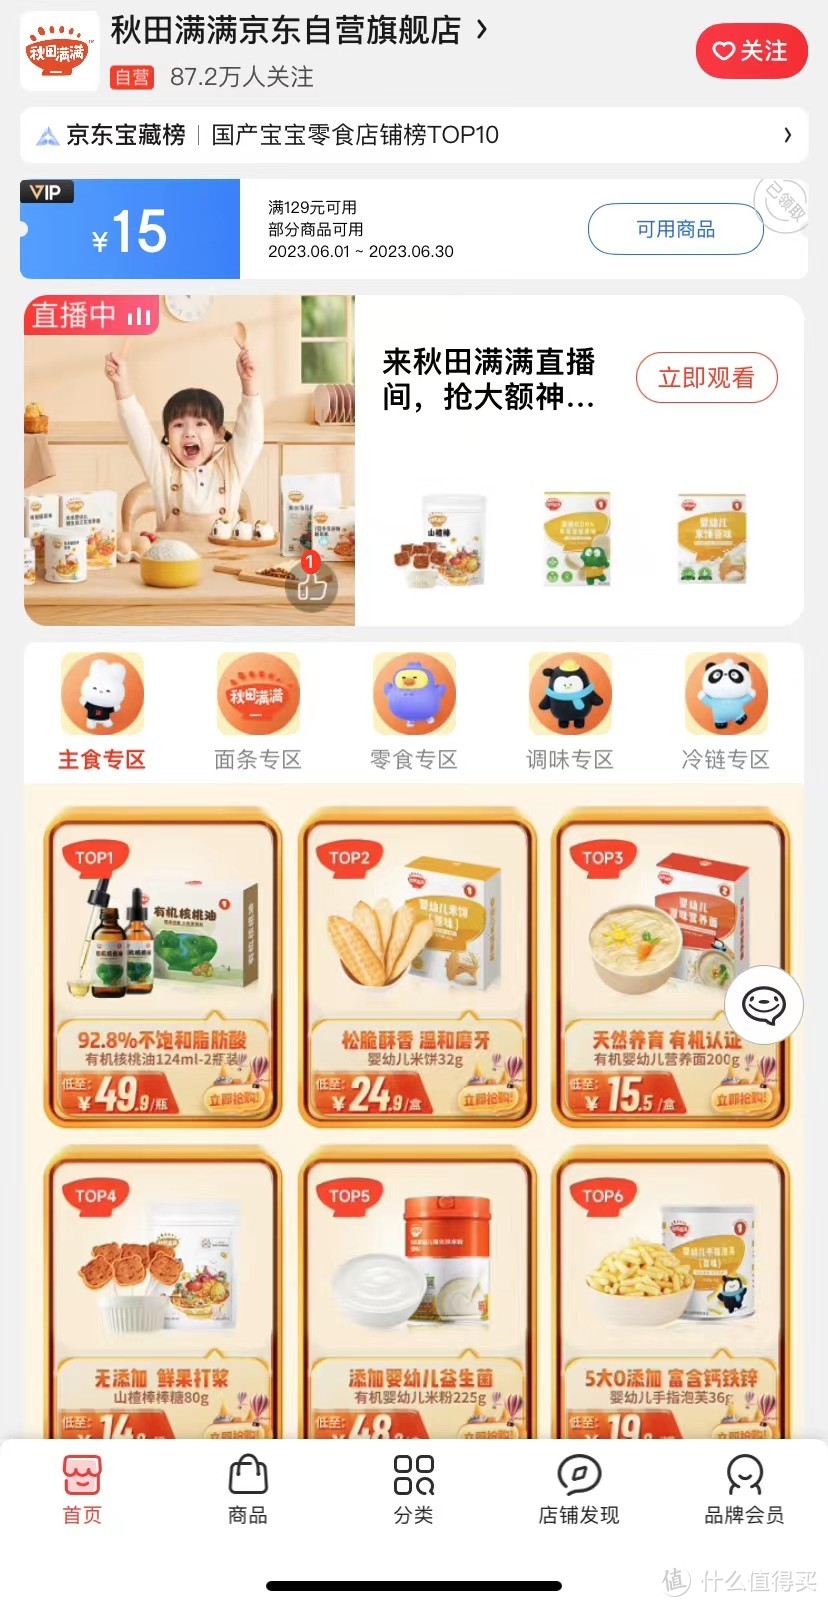 京东电商平台主要婴儿辅食品牌及选购攻略